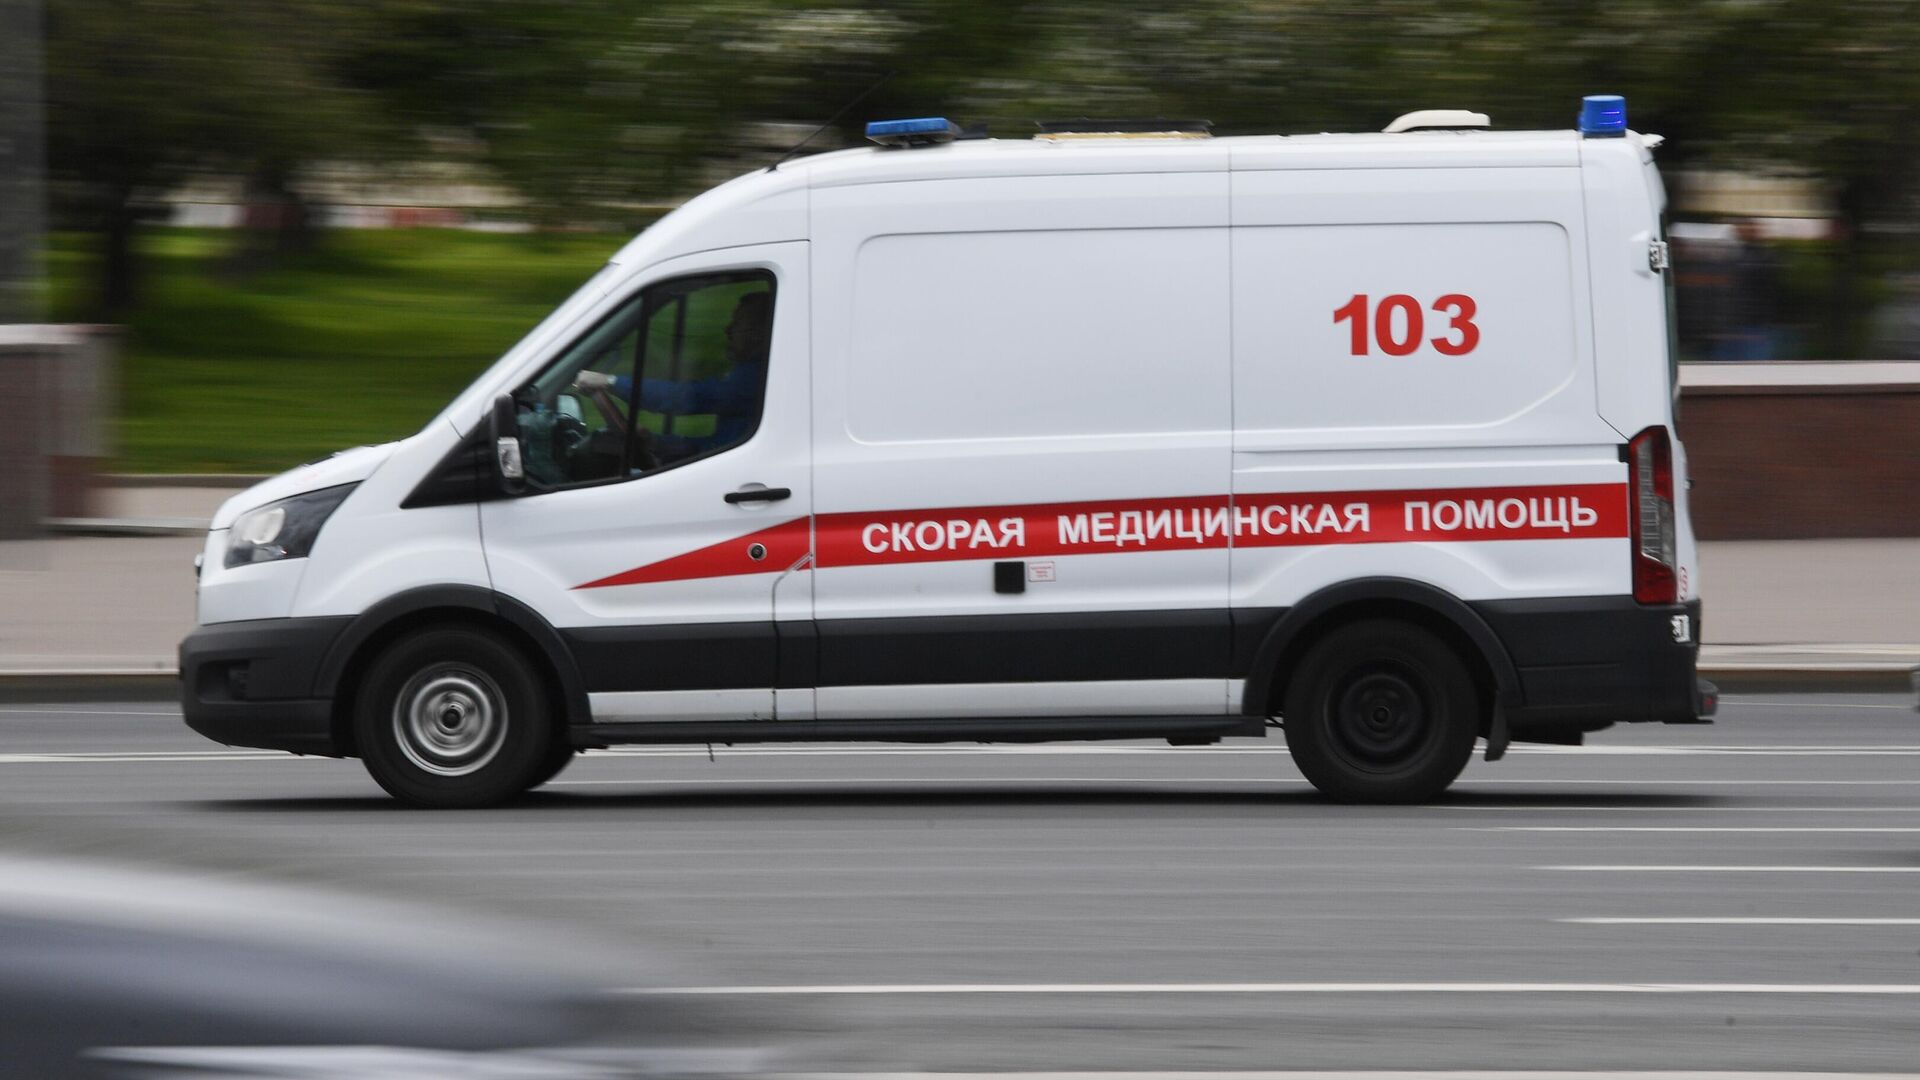 300-килограммовую жительницу Москвы спустили в скорую из окна квартиры